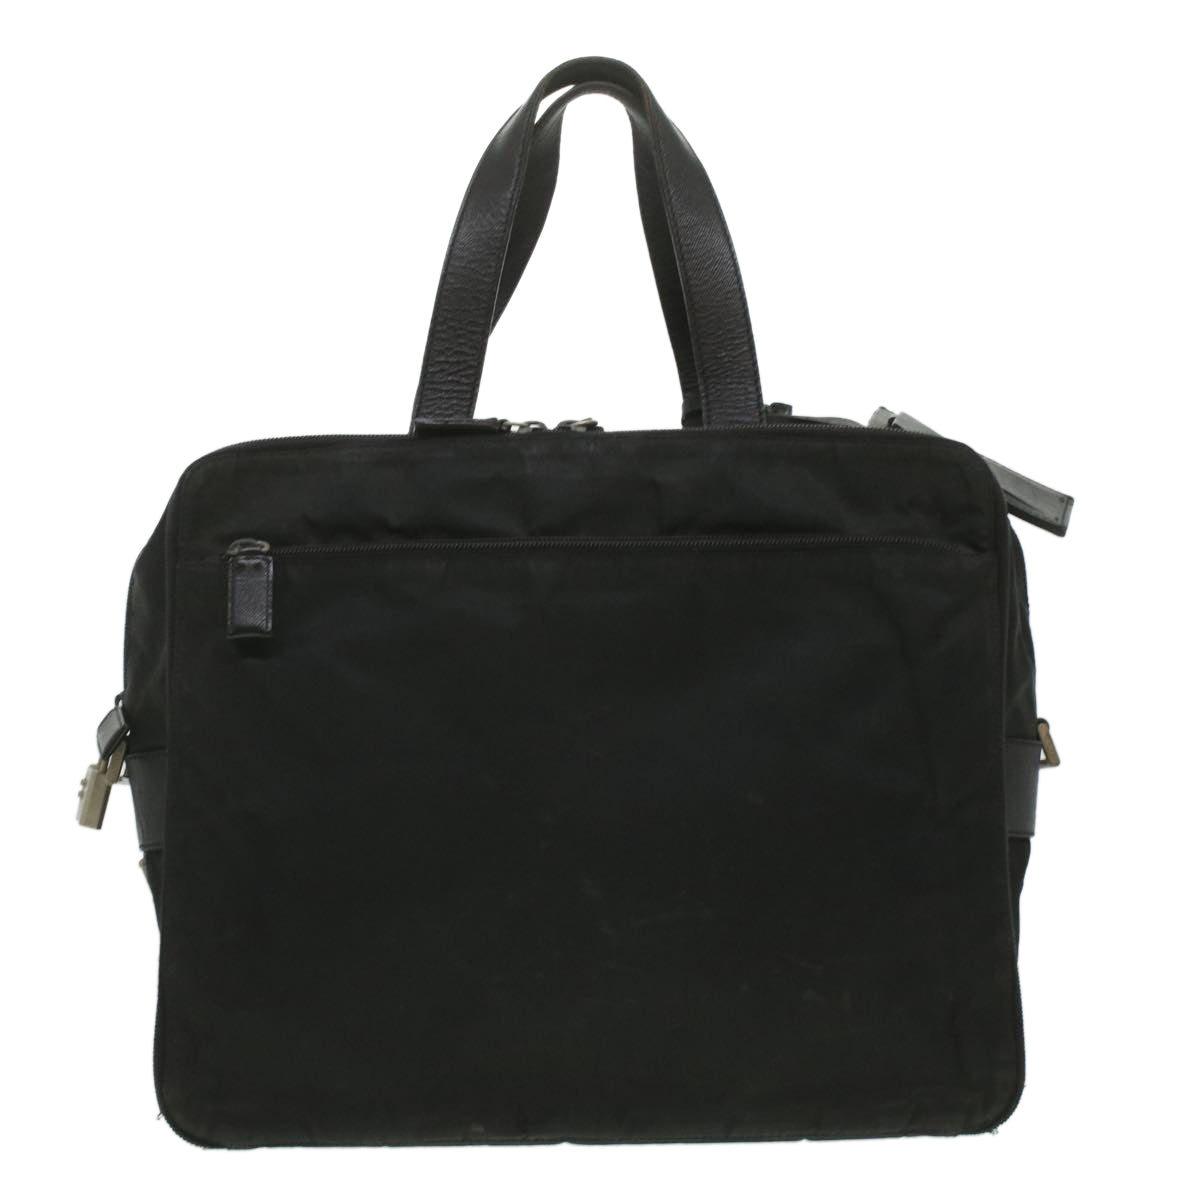 PRADA Business Bag Nylon Black Auth ar8973